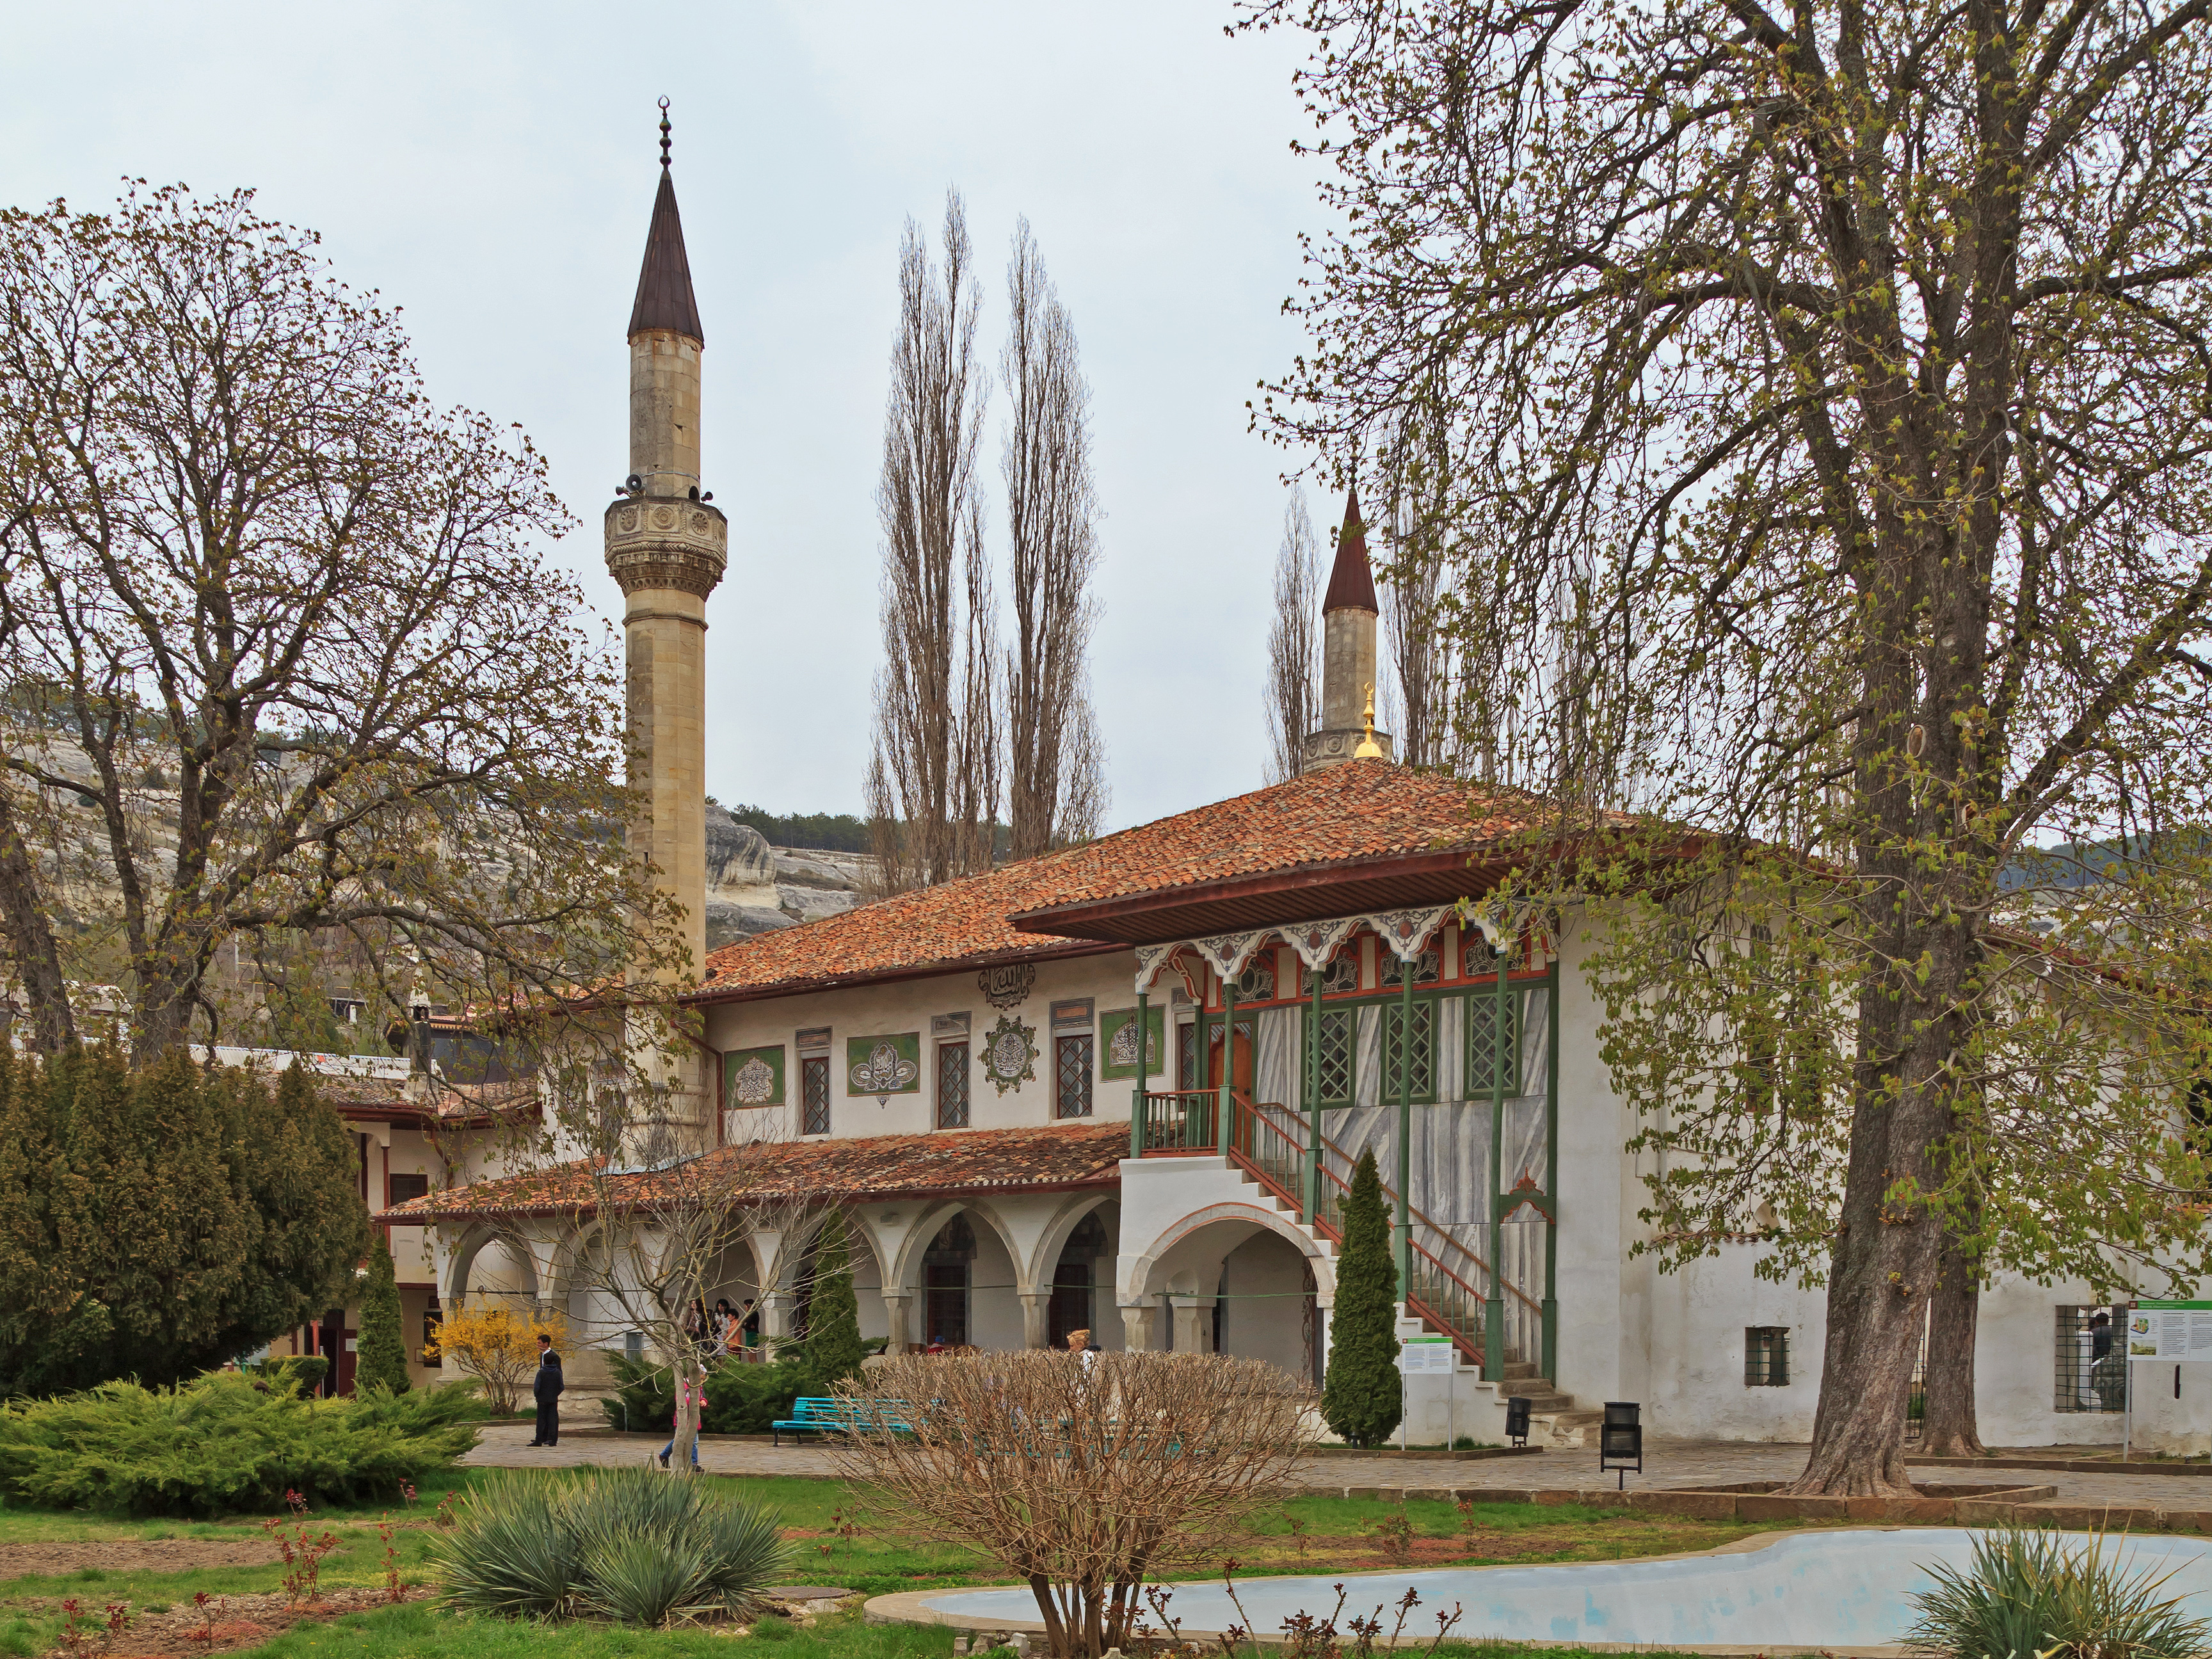 Bakhchysarai 04-14 img14 Palace Grand Mosque